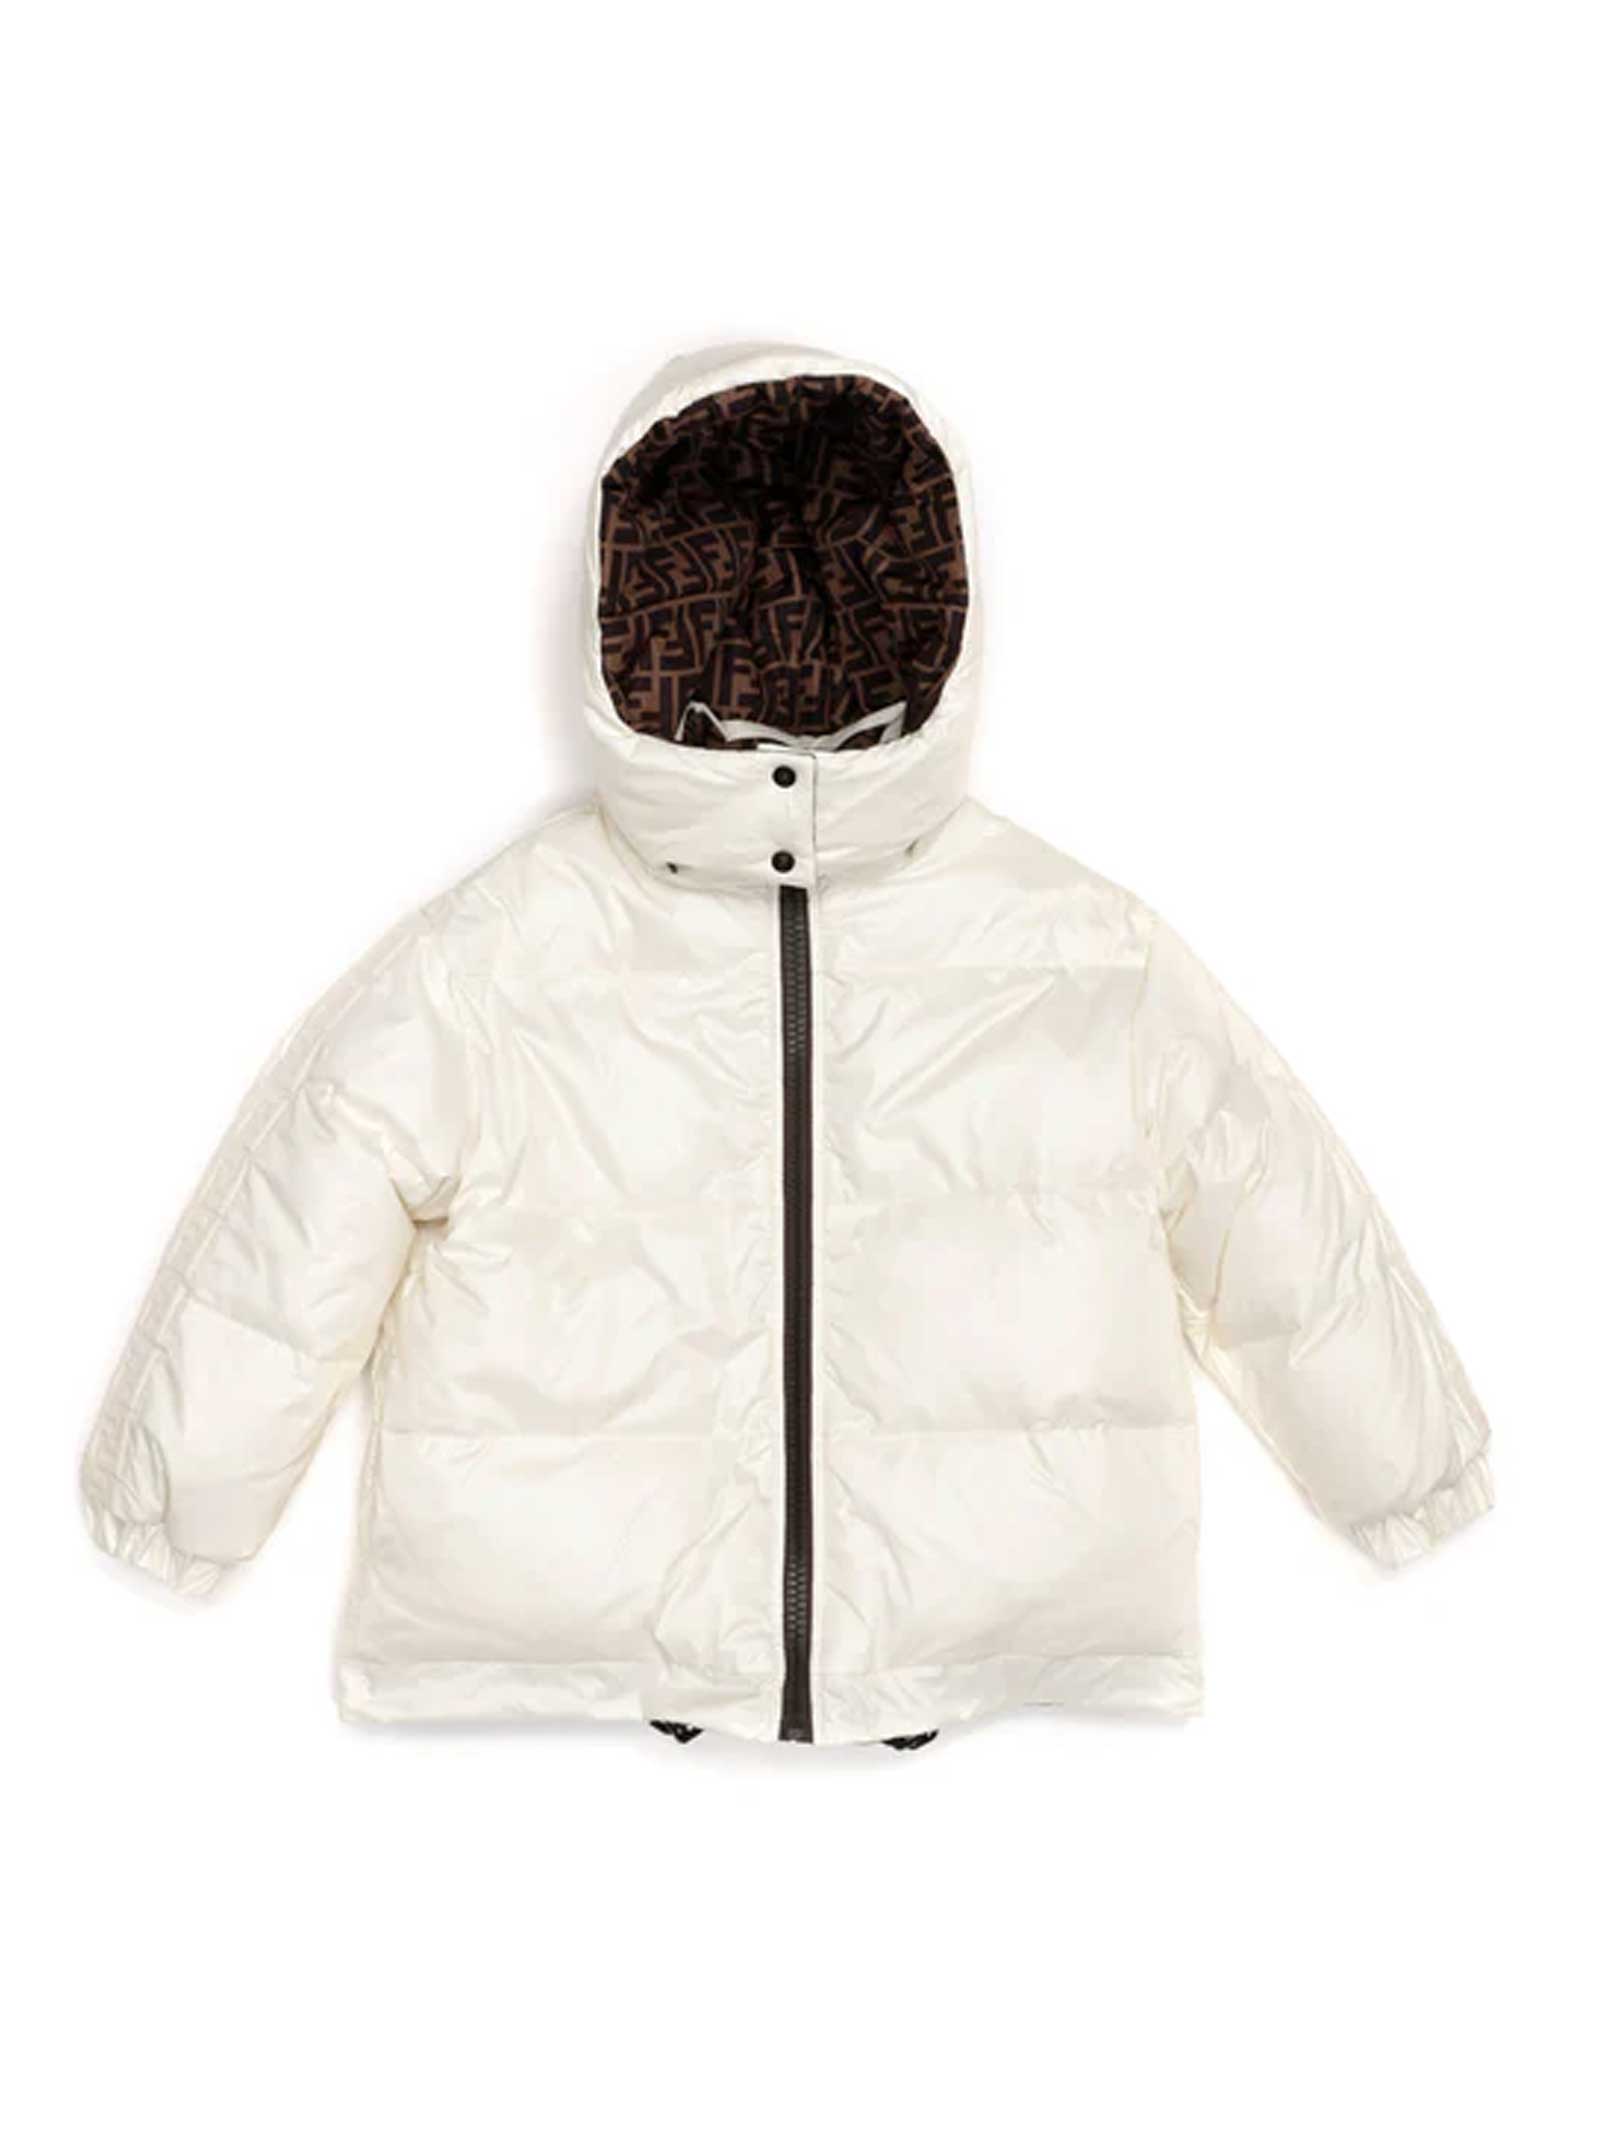 Fendi Unisex White Jacket With Hood